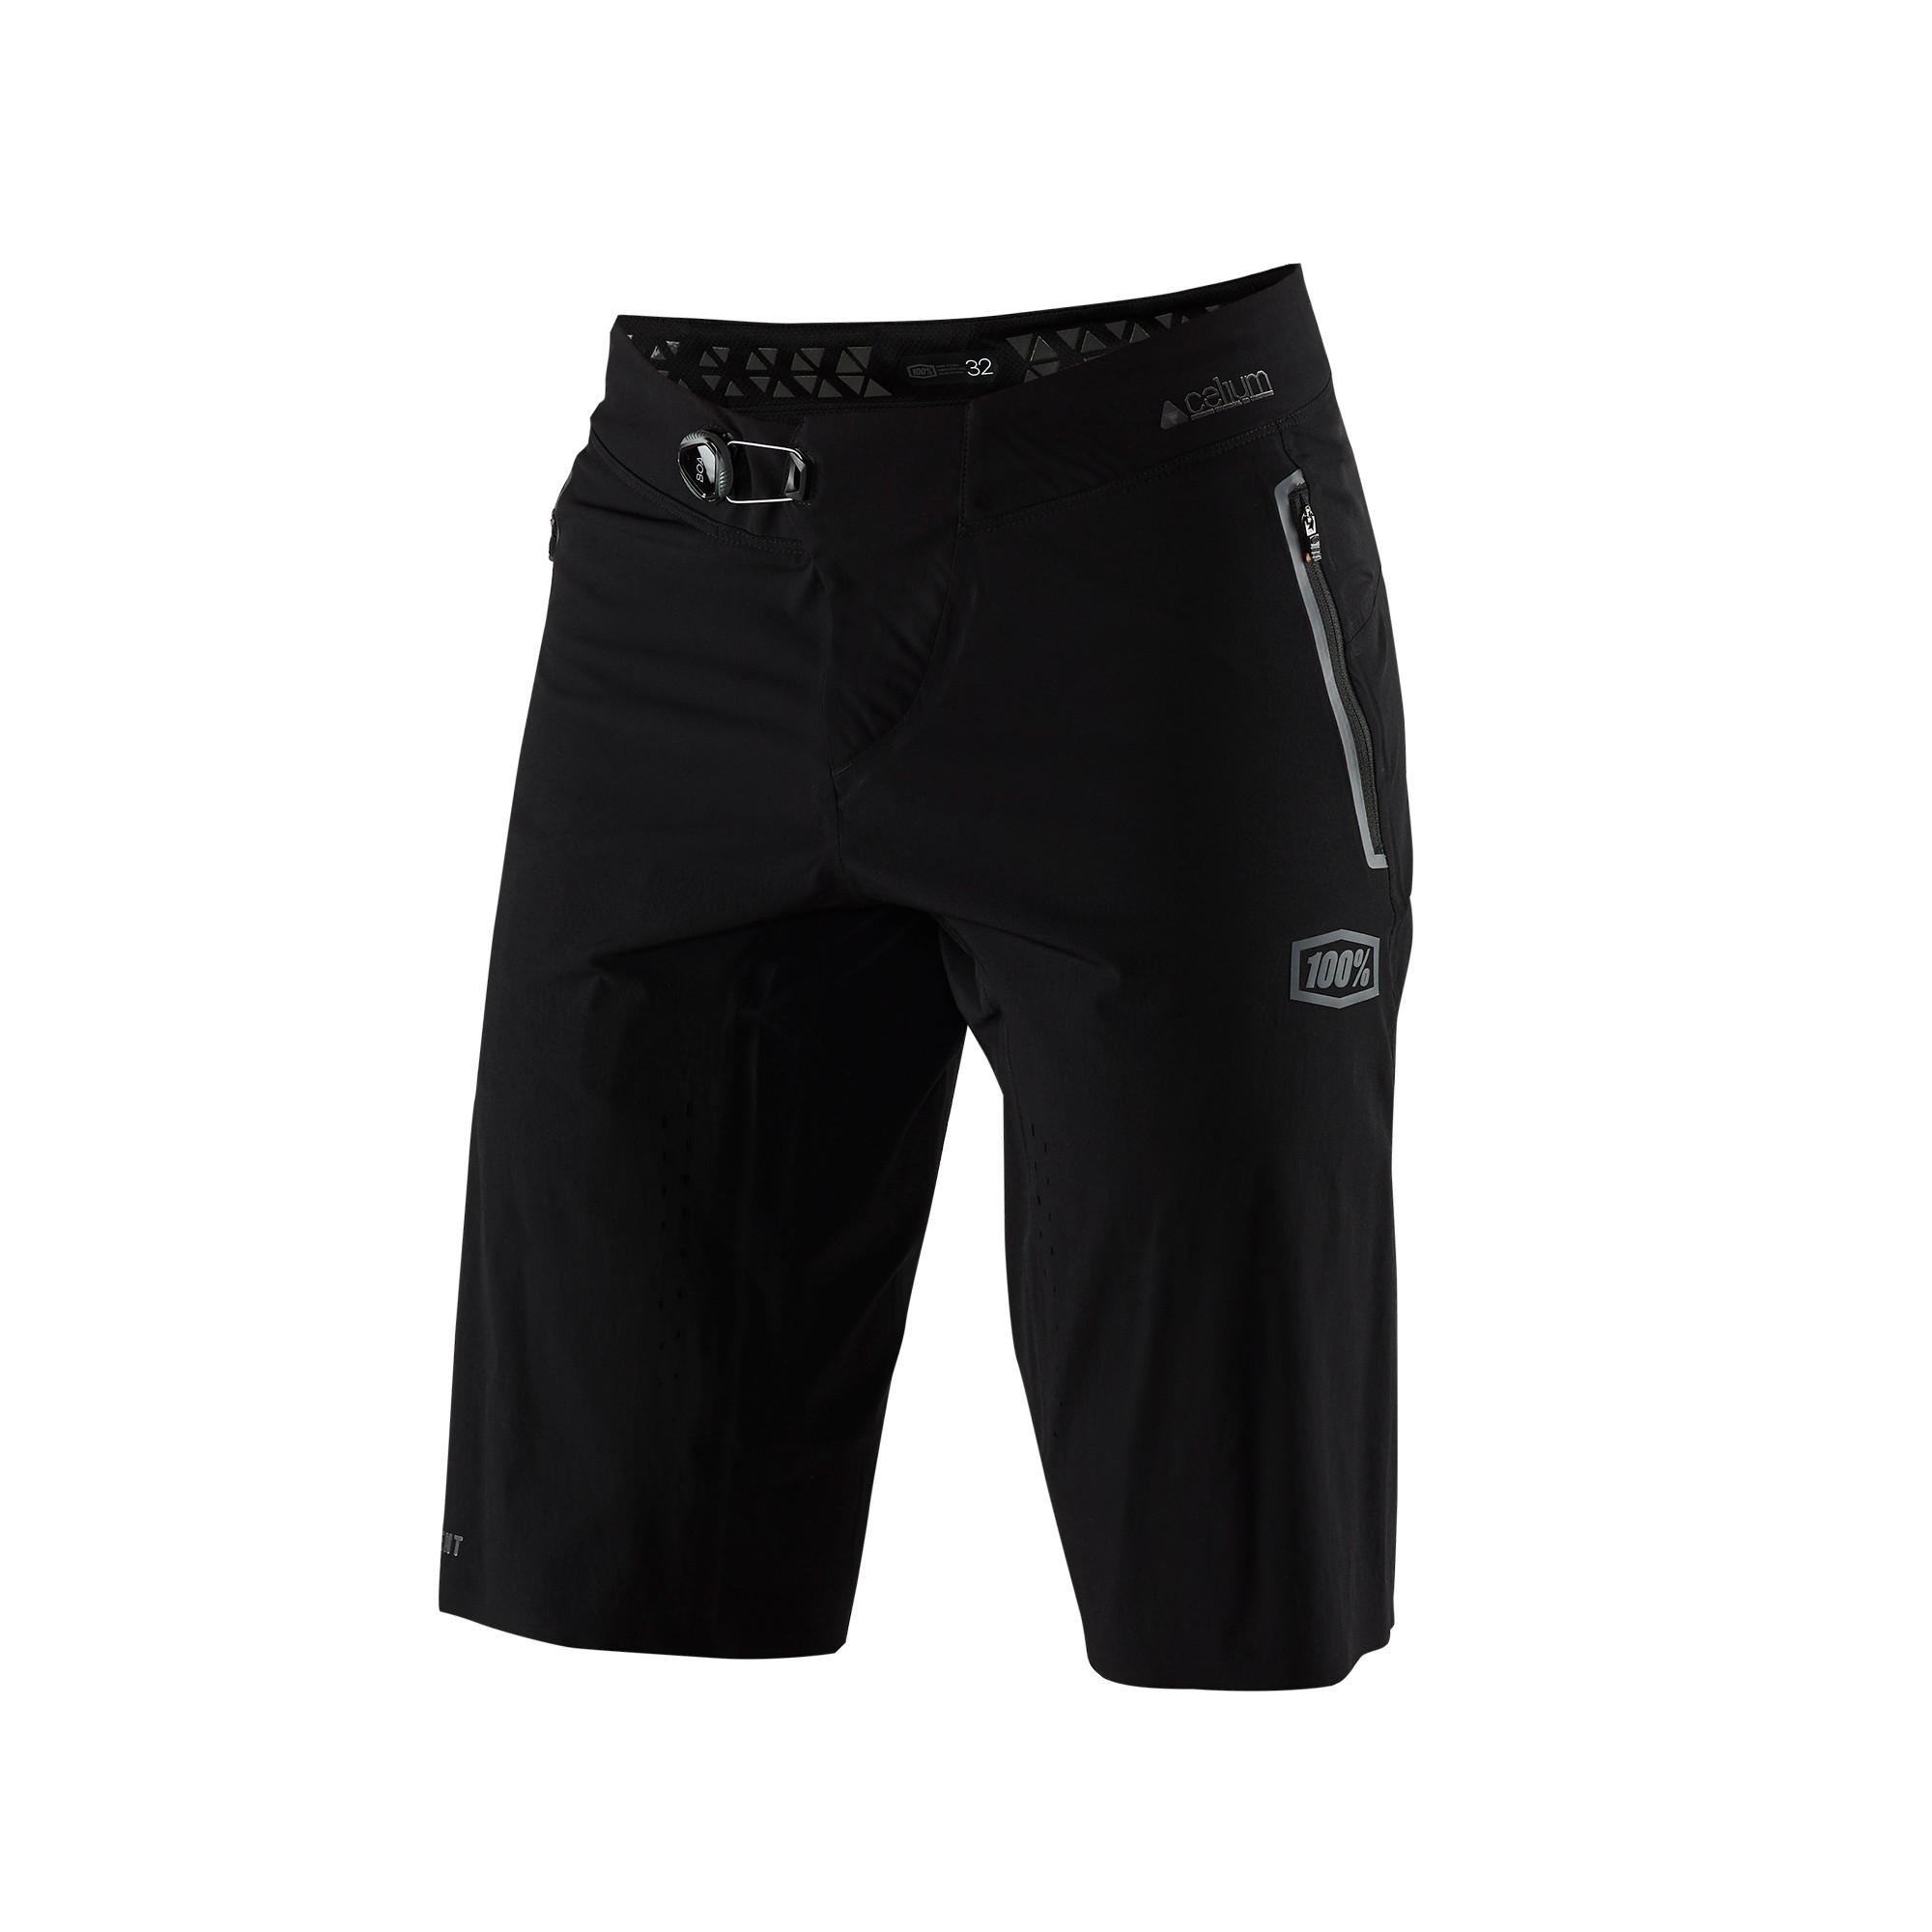 100% Celium Shorts - Black